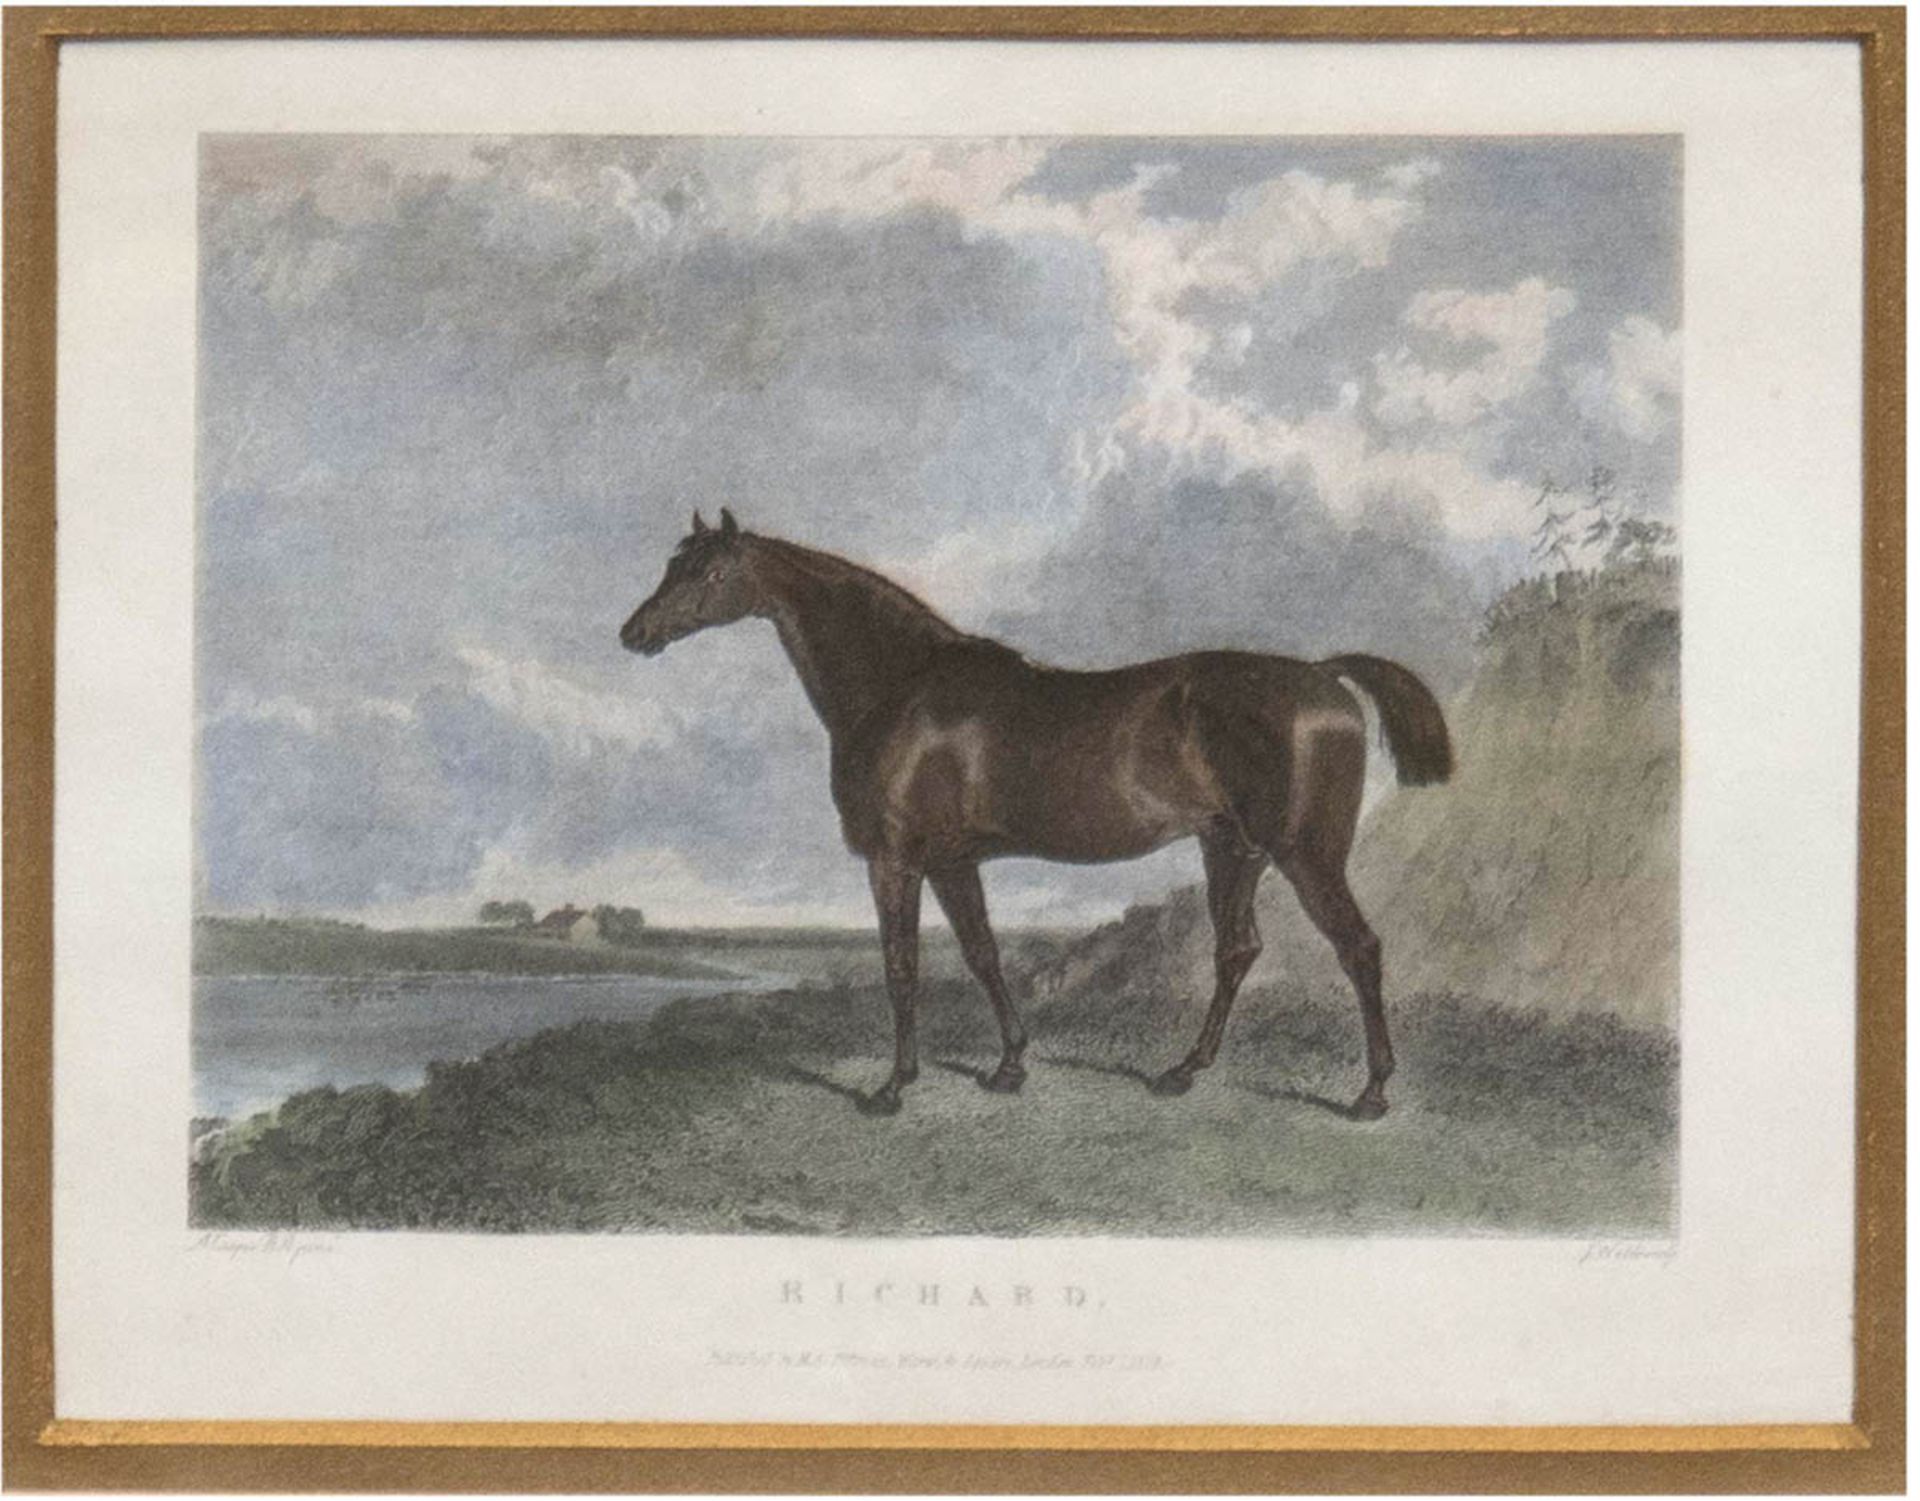 "Pferd 'Richard' in Uferlandschaft", altkol. Kupferstich 1828, 10x13 cm, hinter Glas im Passepart